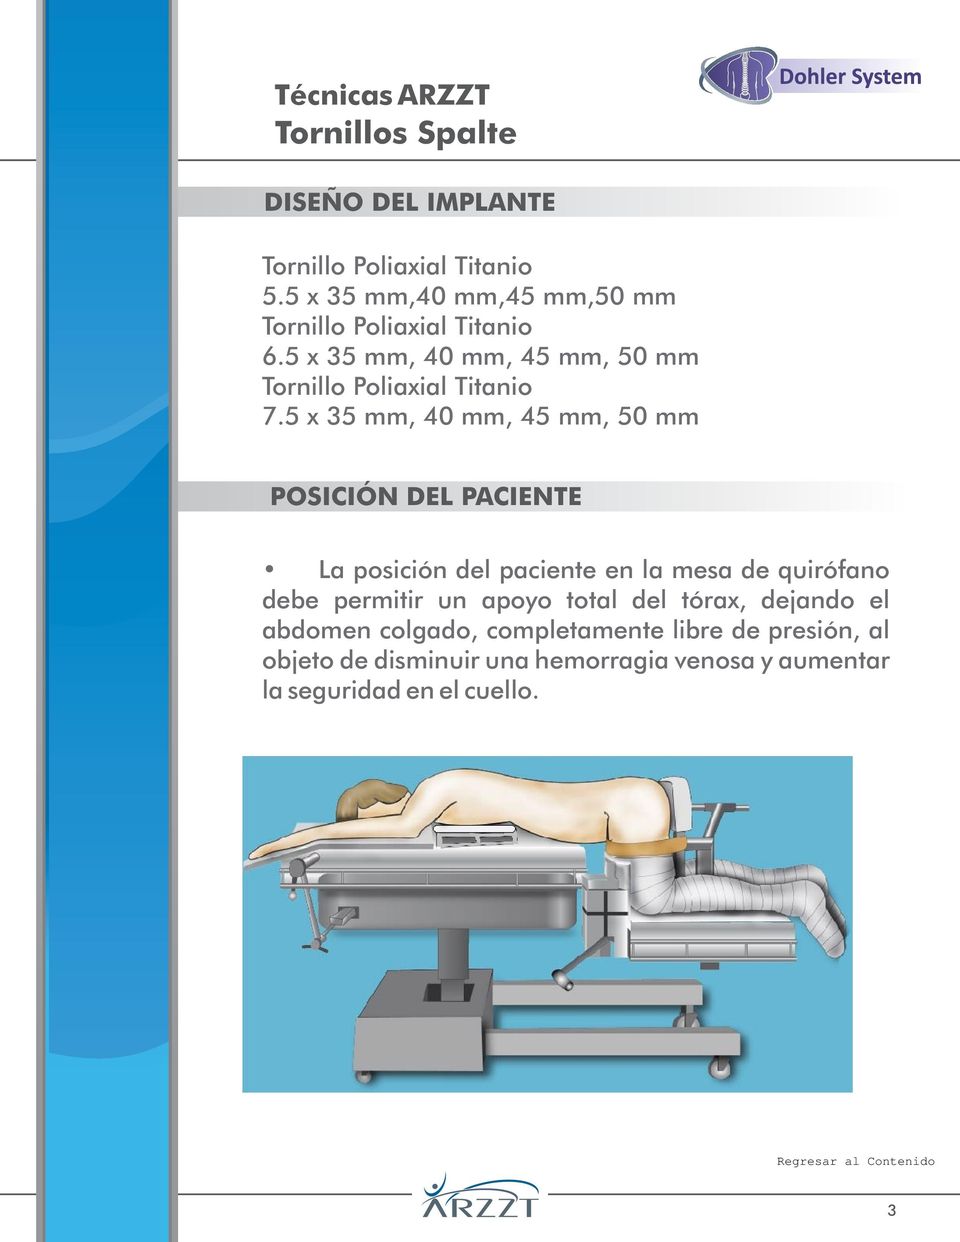 5 x 35 mm, 40 mm, 45 mm, 50 mm POSICIÓN DEL PACIENTE La posición del paciente en la mesa de quirófano debe